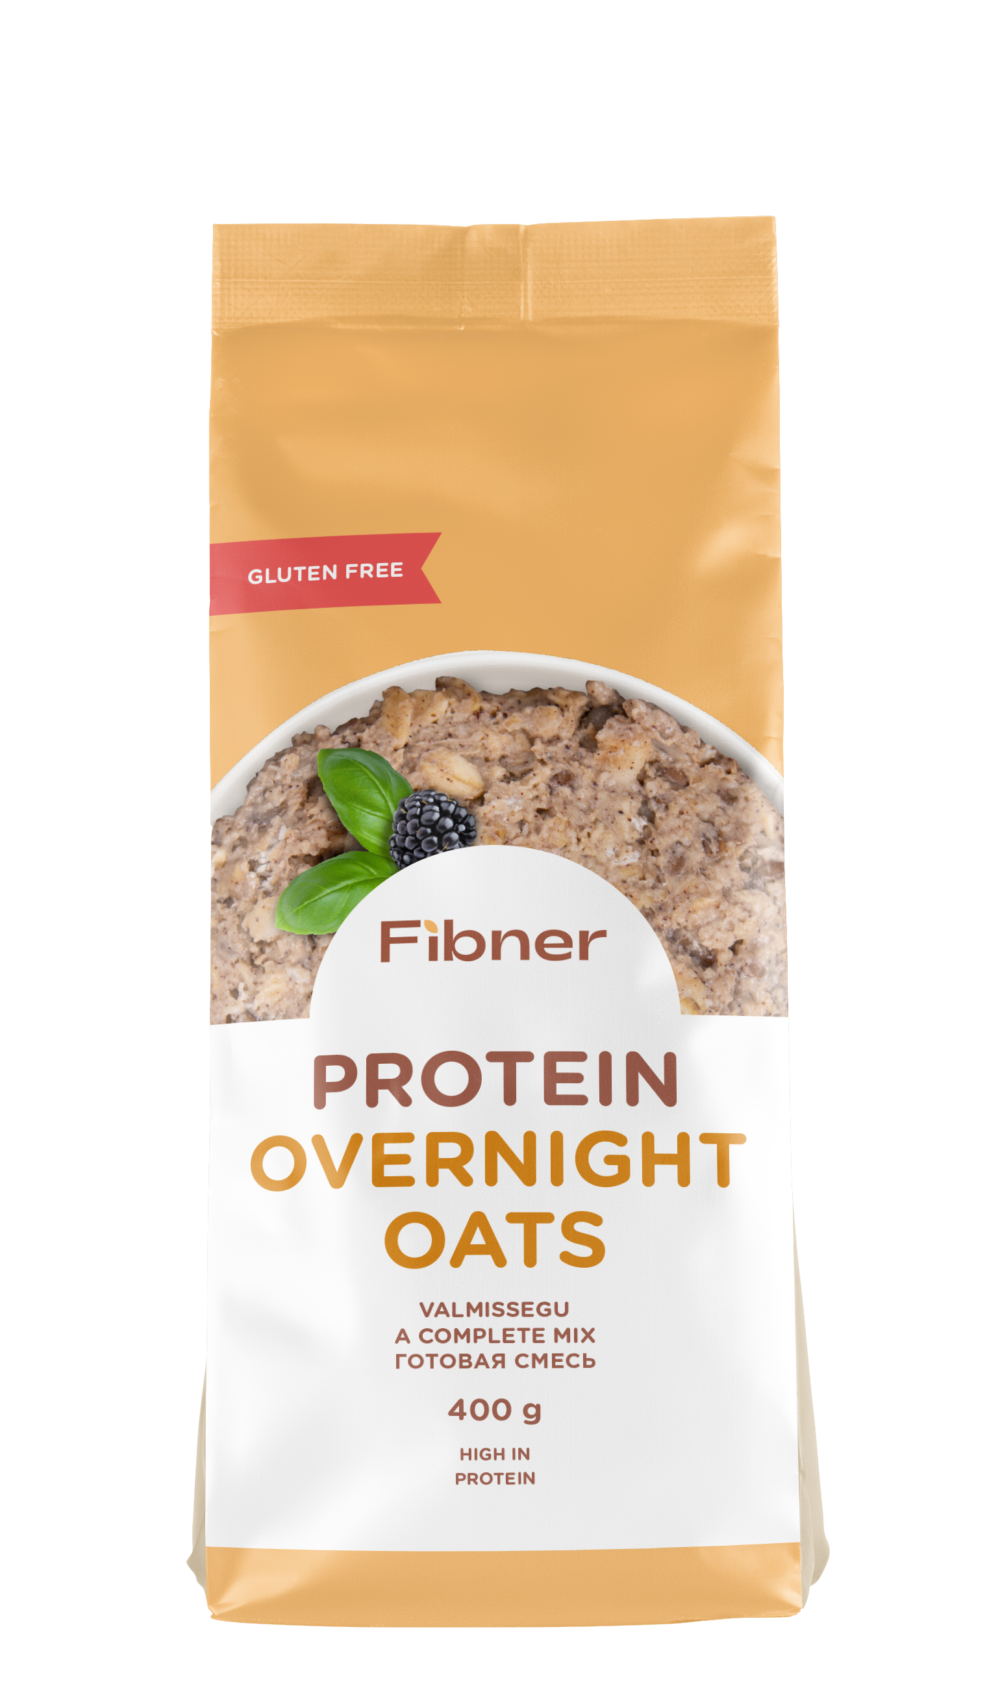 Gluten free protein overnight oats